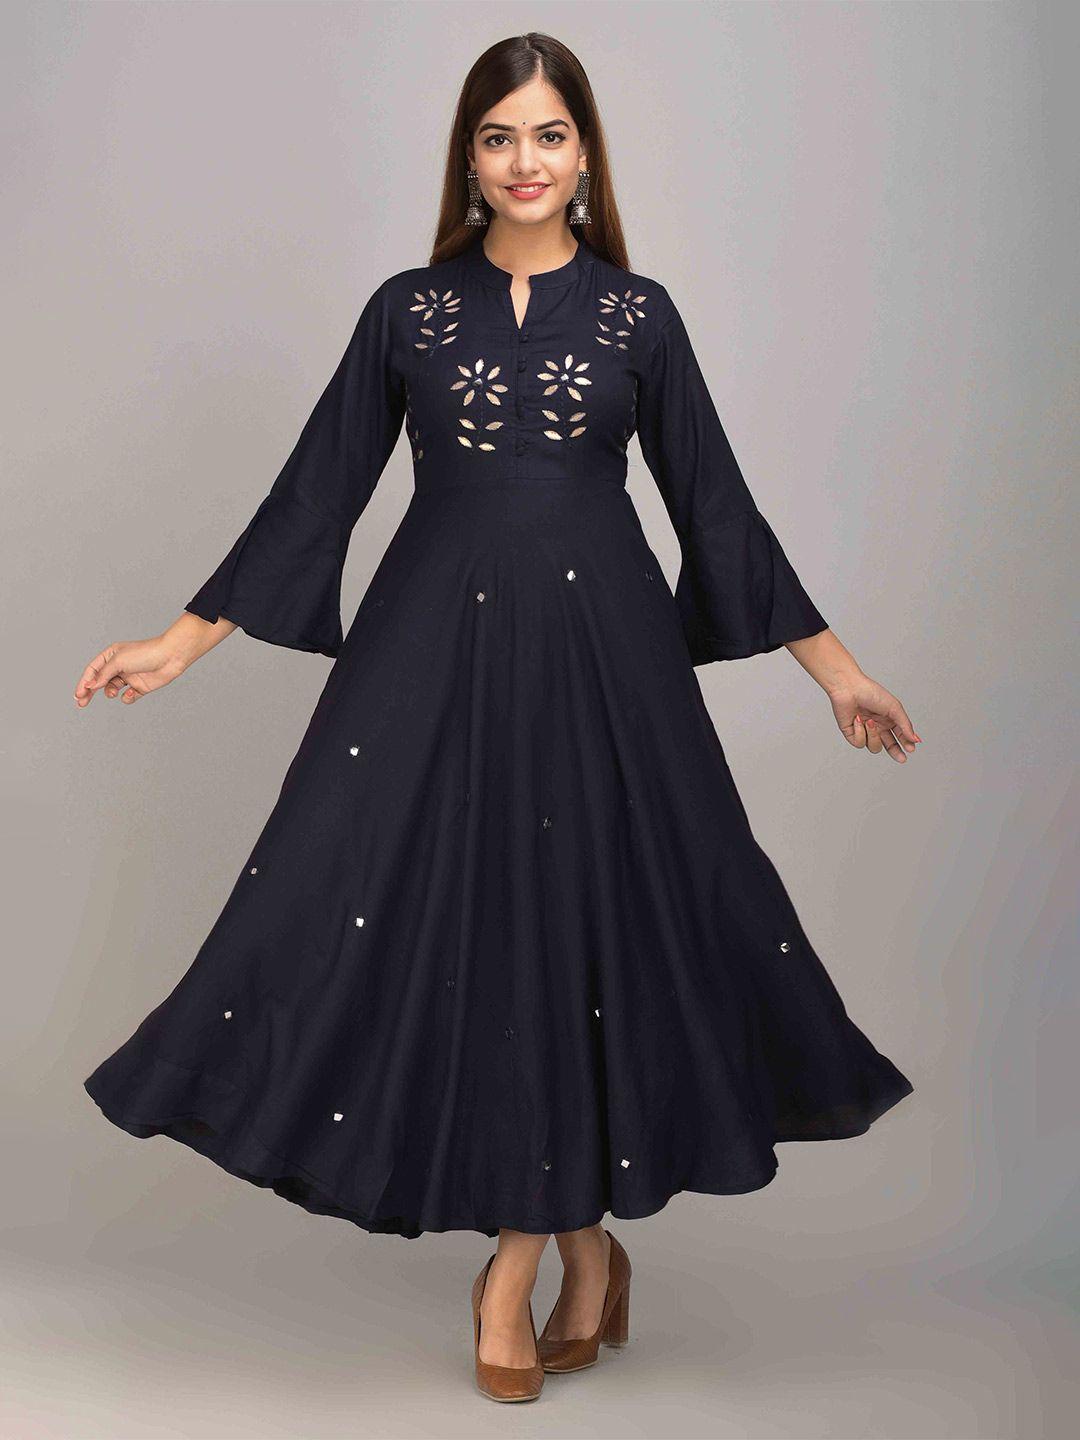 jaipur fashion mode floral embellished mandarin collar bell sleeves mirror work maxi dress